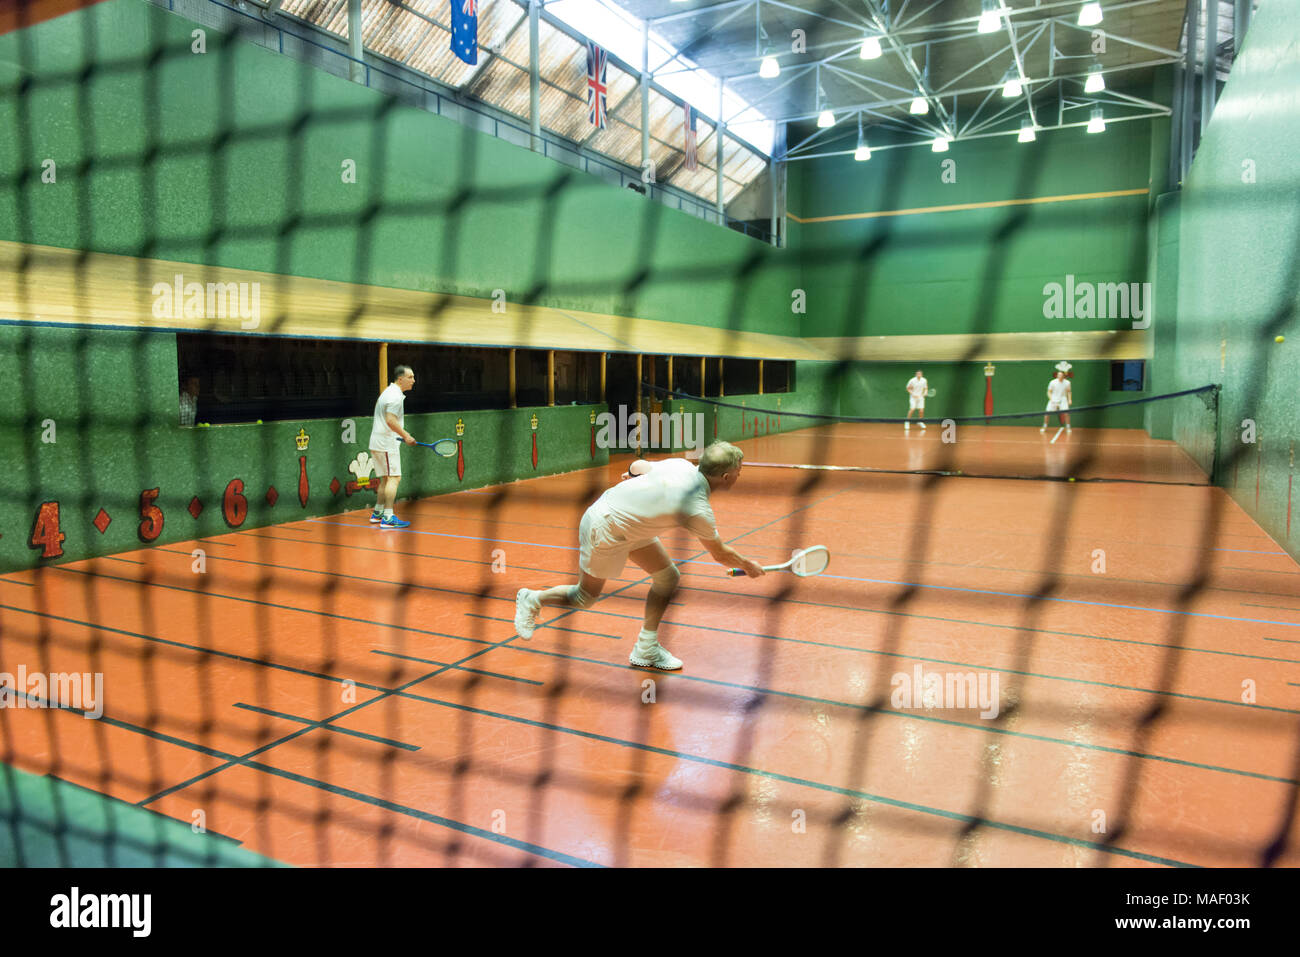 Du vrai tennis avec des joueurs en action. Banque D'Images